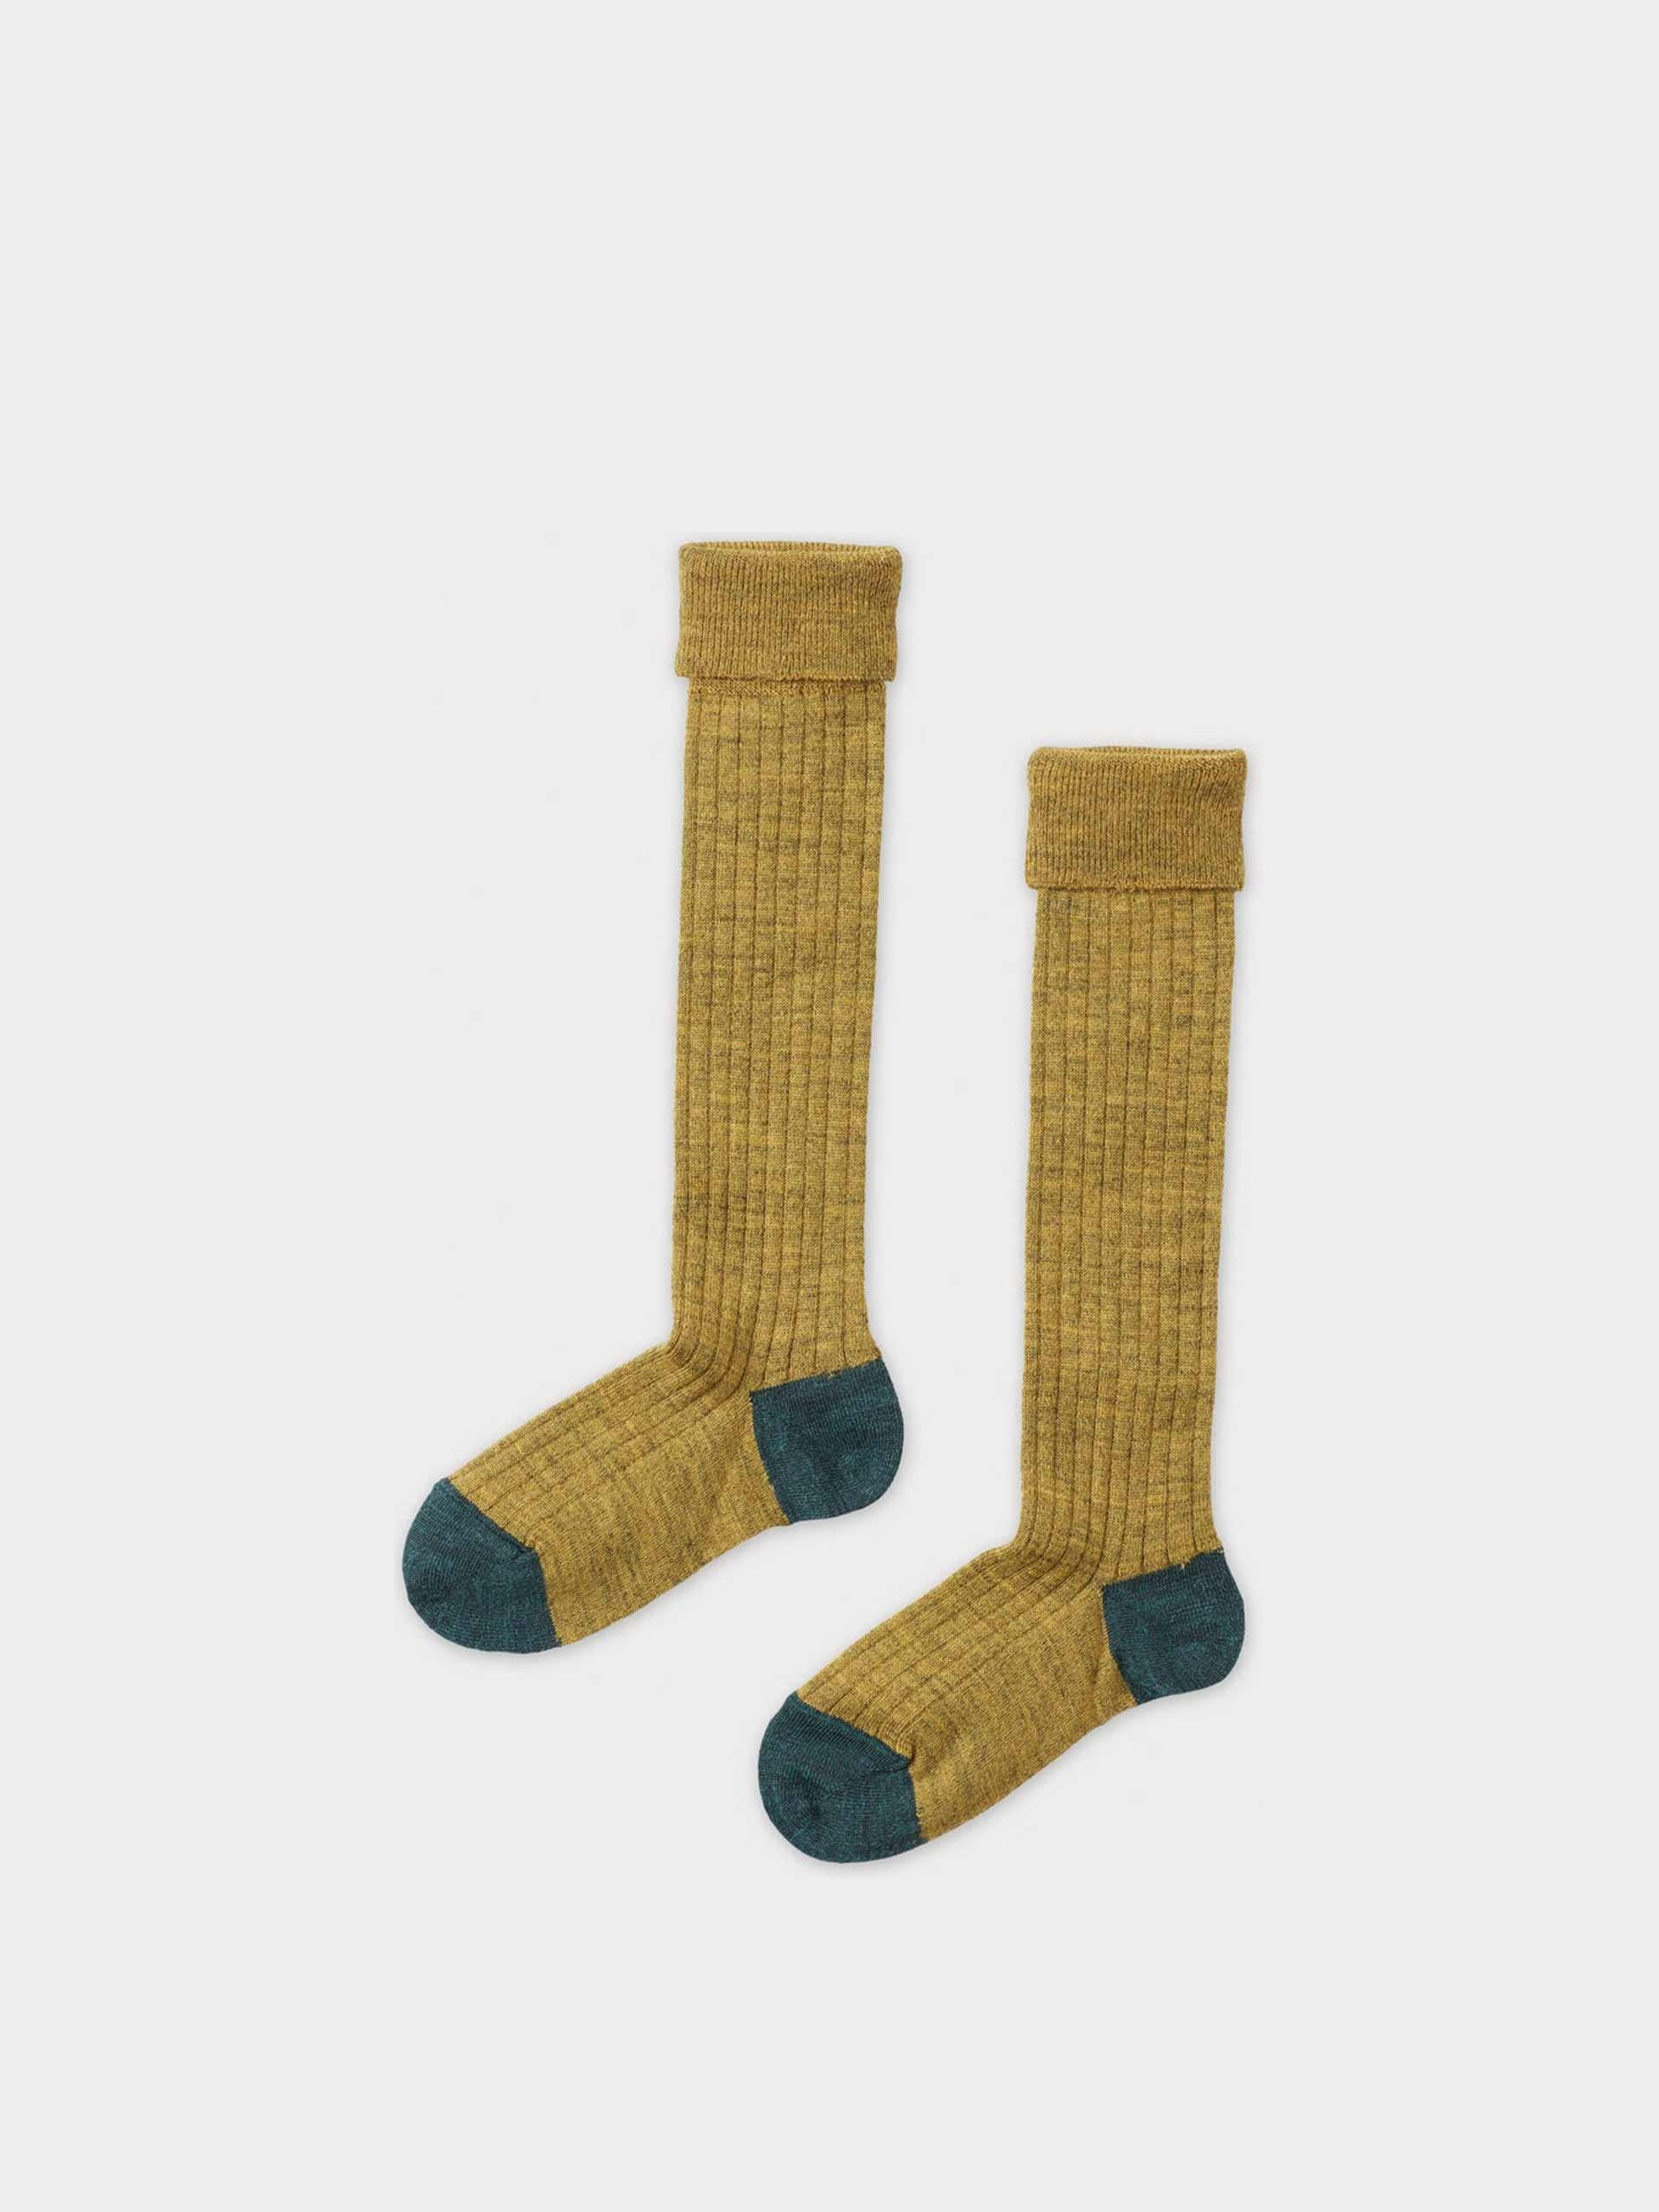 Rib knee socks - mustard/teal